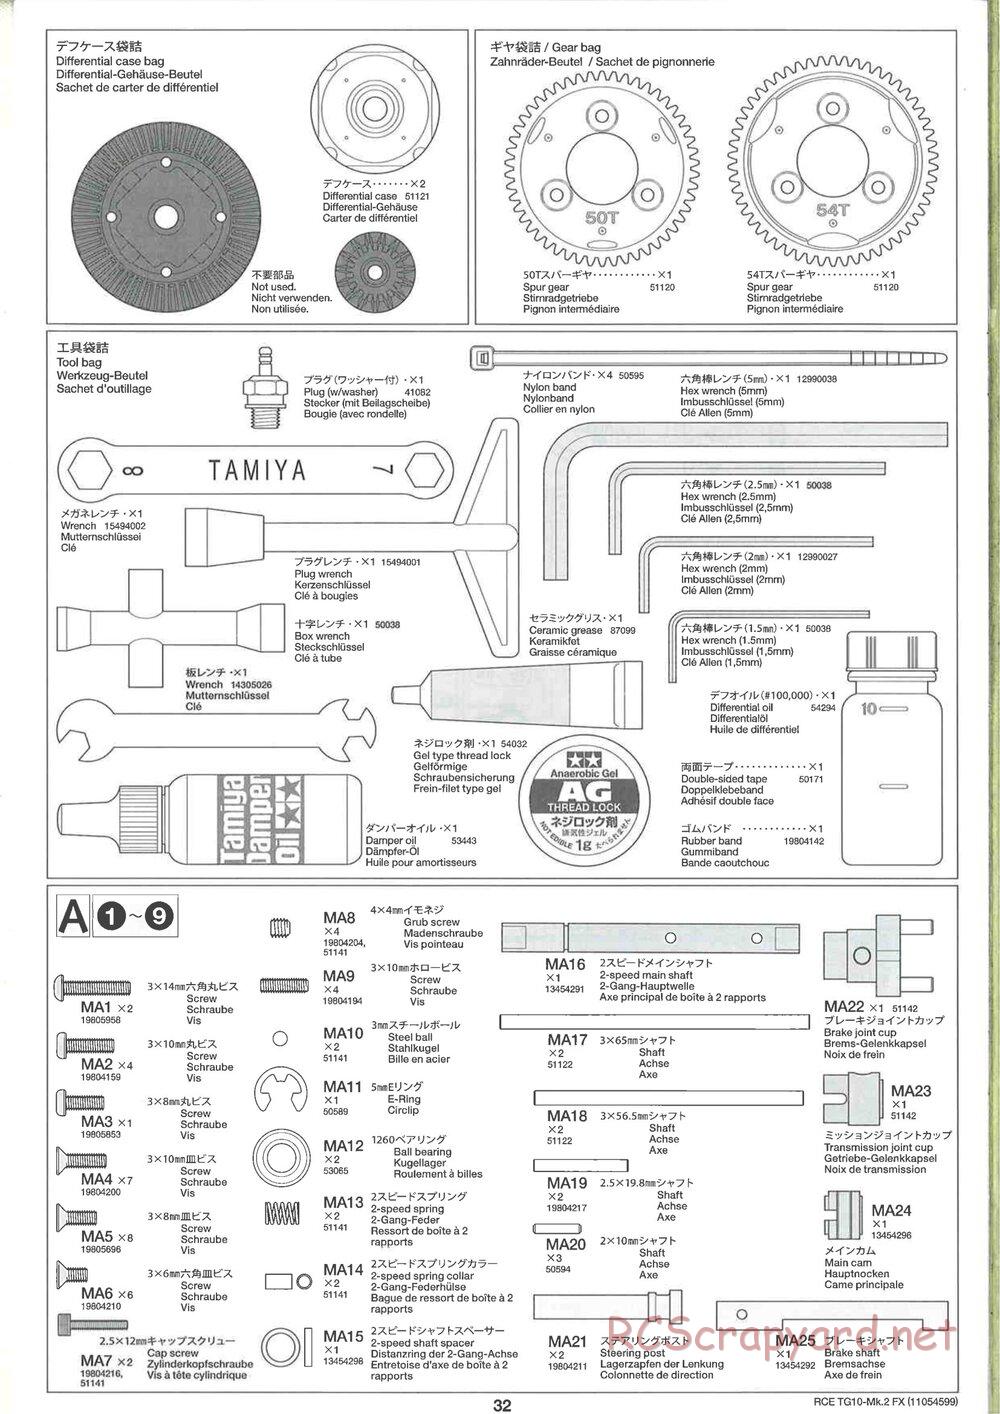 Tamiya - TG10 Mk.2 FX Chassis - Manual - Page 32